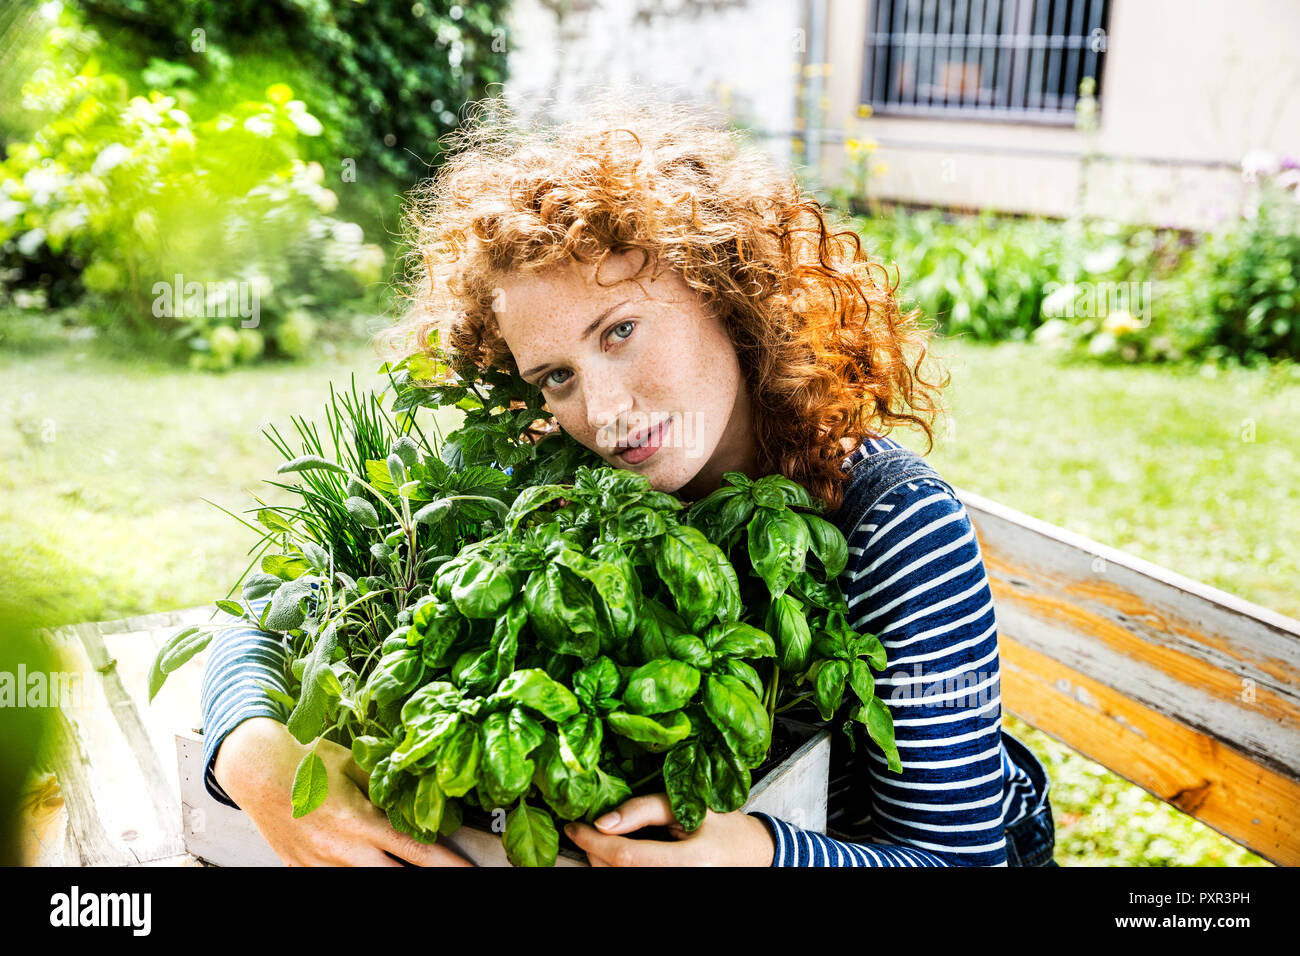 Ritratto di giovane donna con erbe aromatiche fresche in una scatola Foto Stock